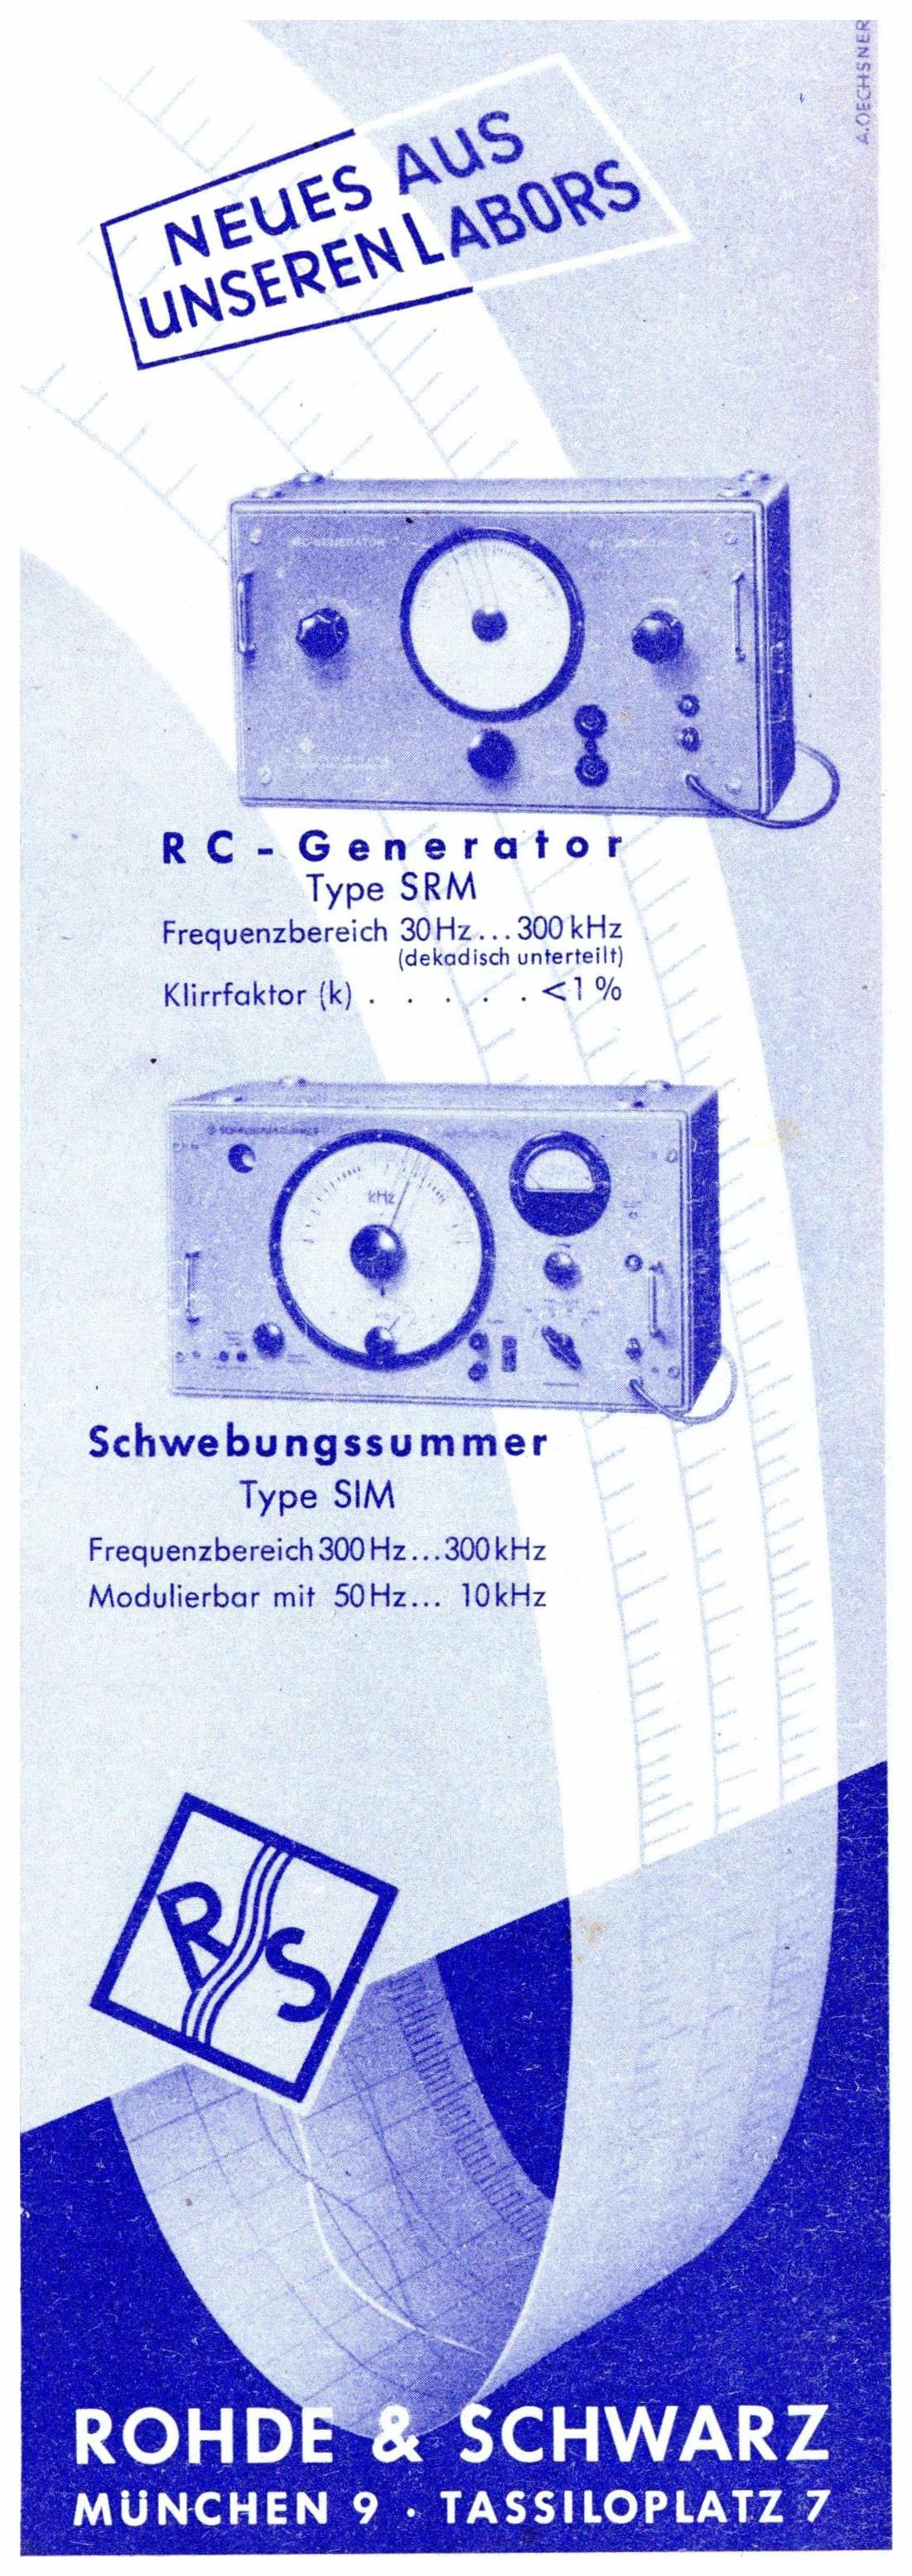 Rohde & Schwarz 19521.jpg